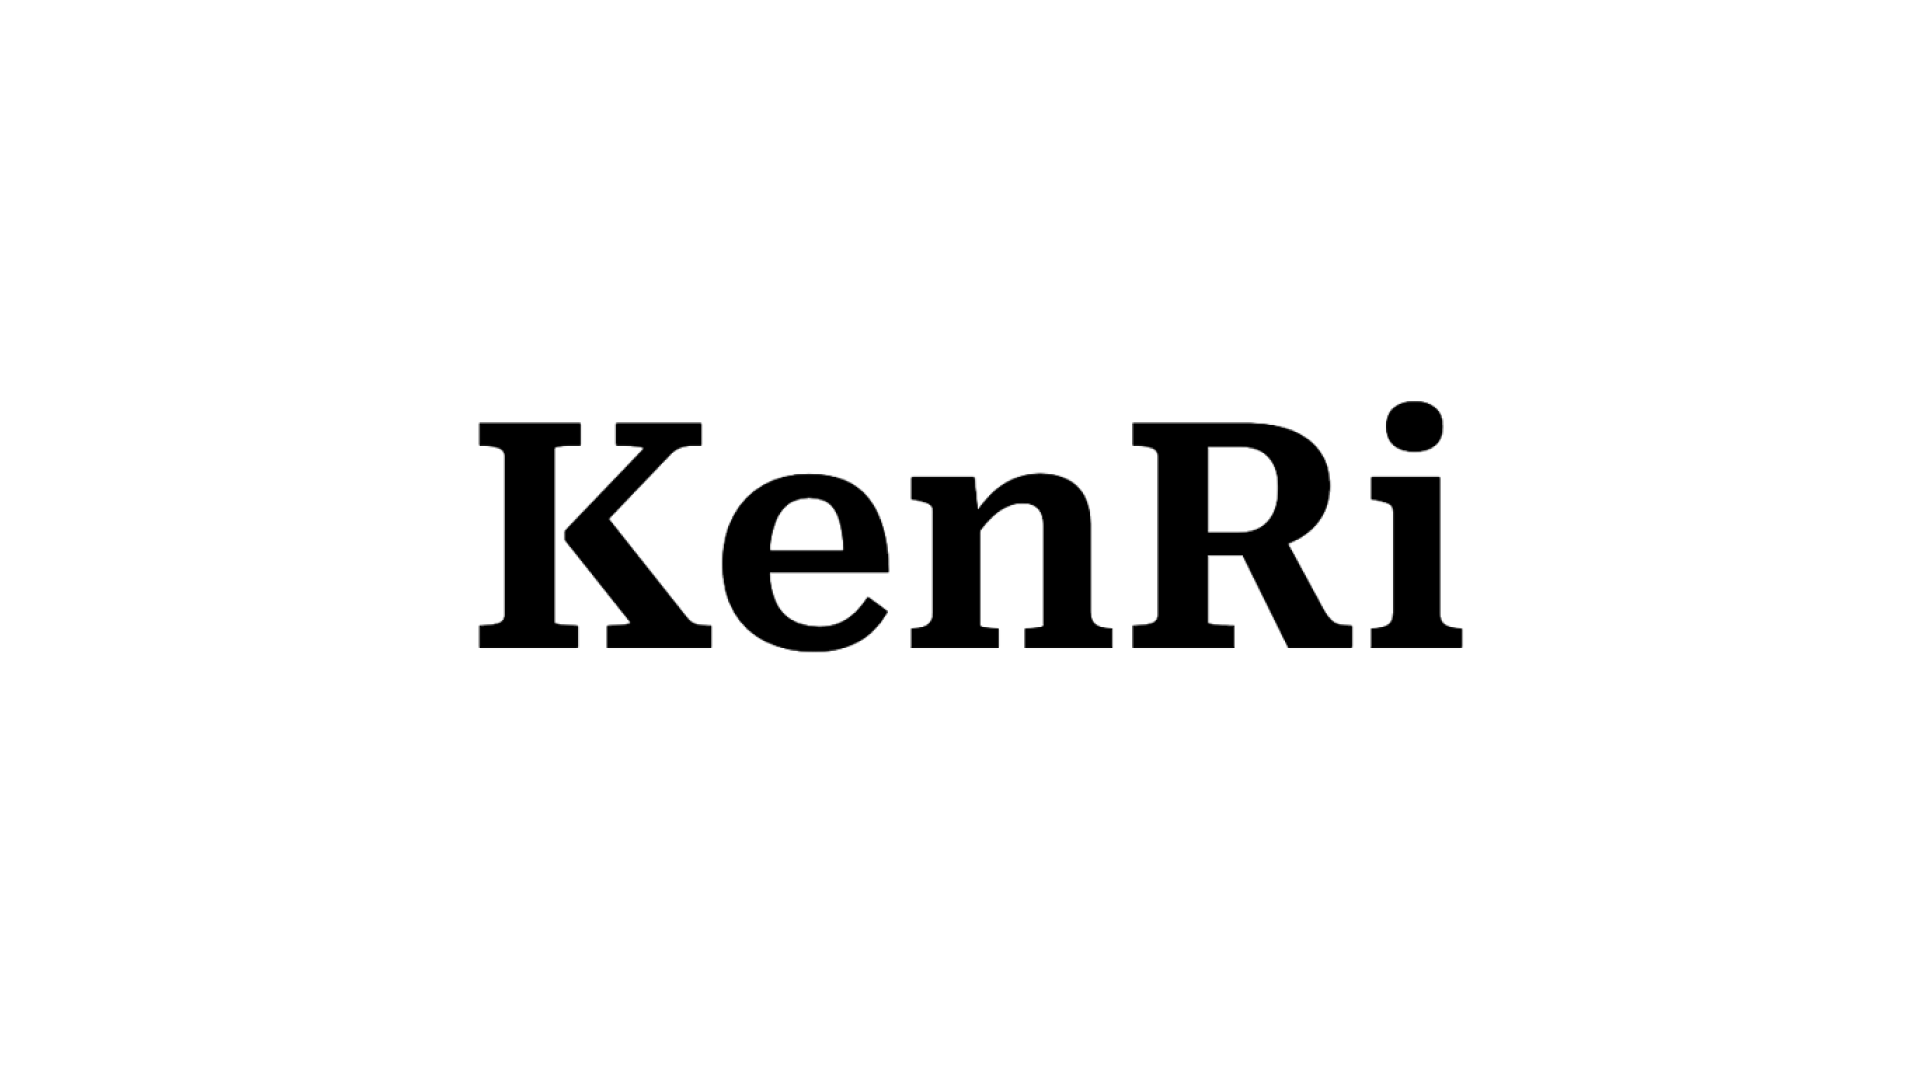 正当な権利者を泣き寝入りさせない司法社会を構築する『KenRi』が、シードラウンドにて7,000万円の資金調達を実施